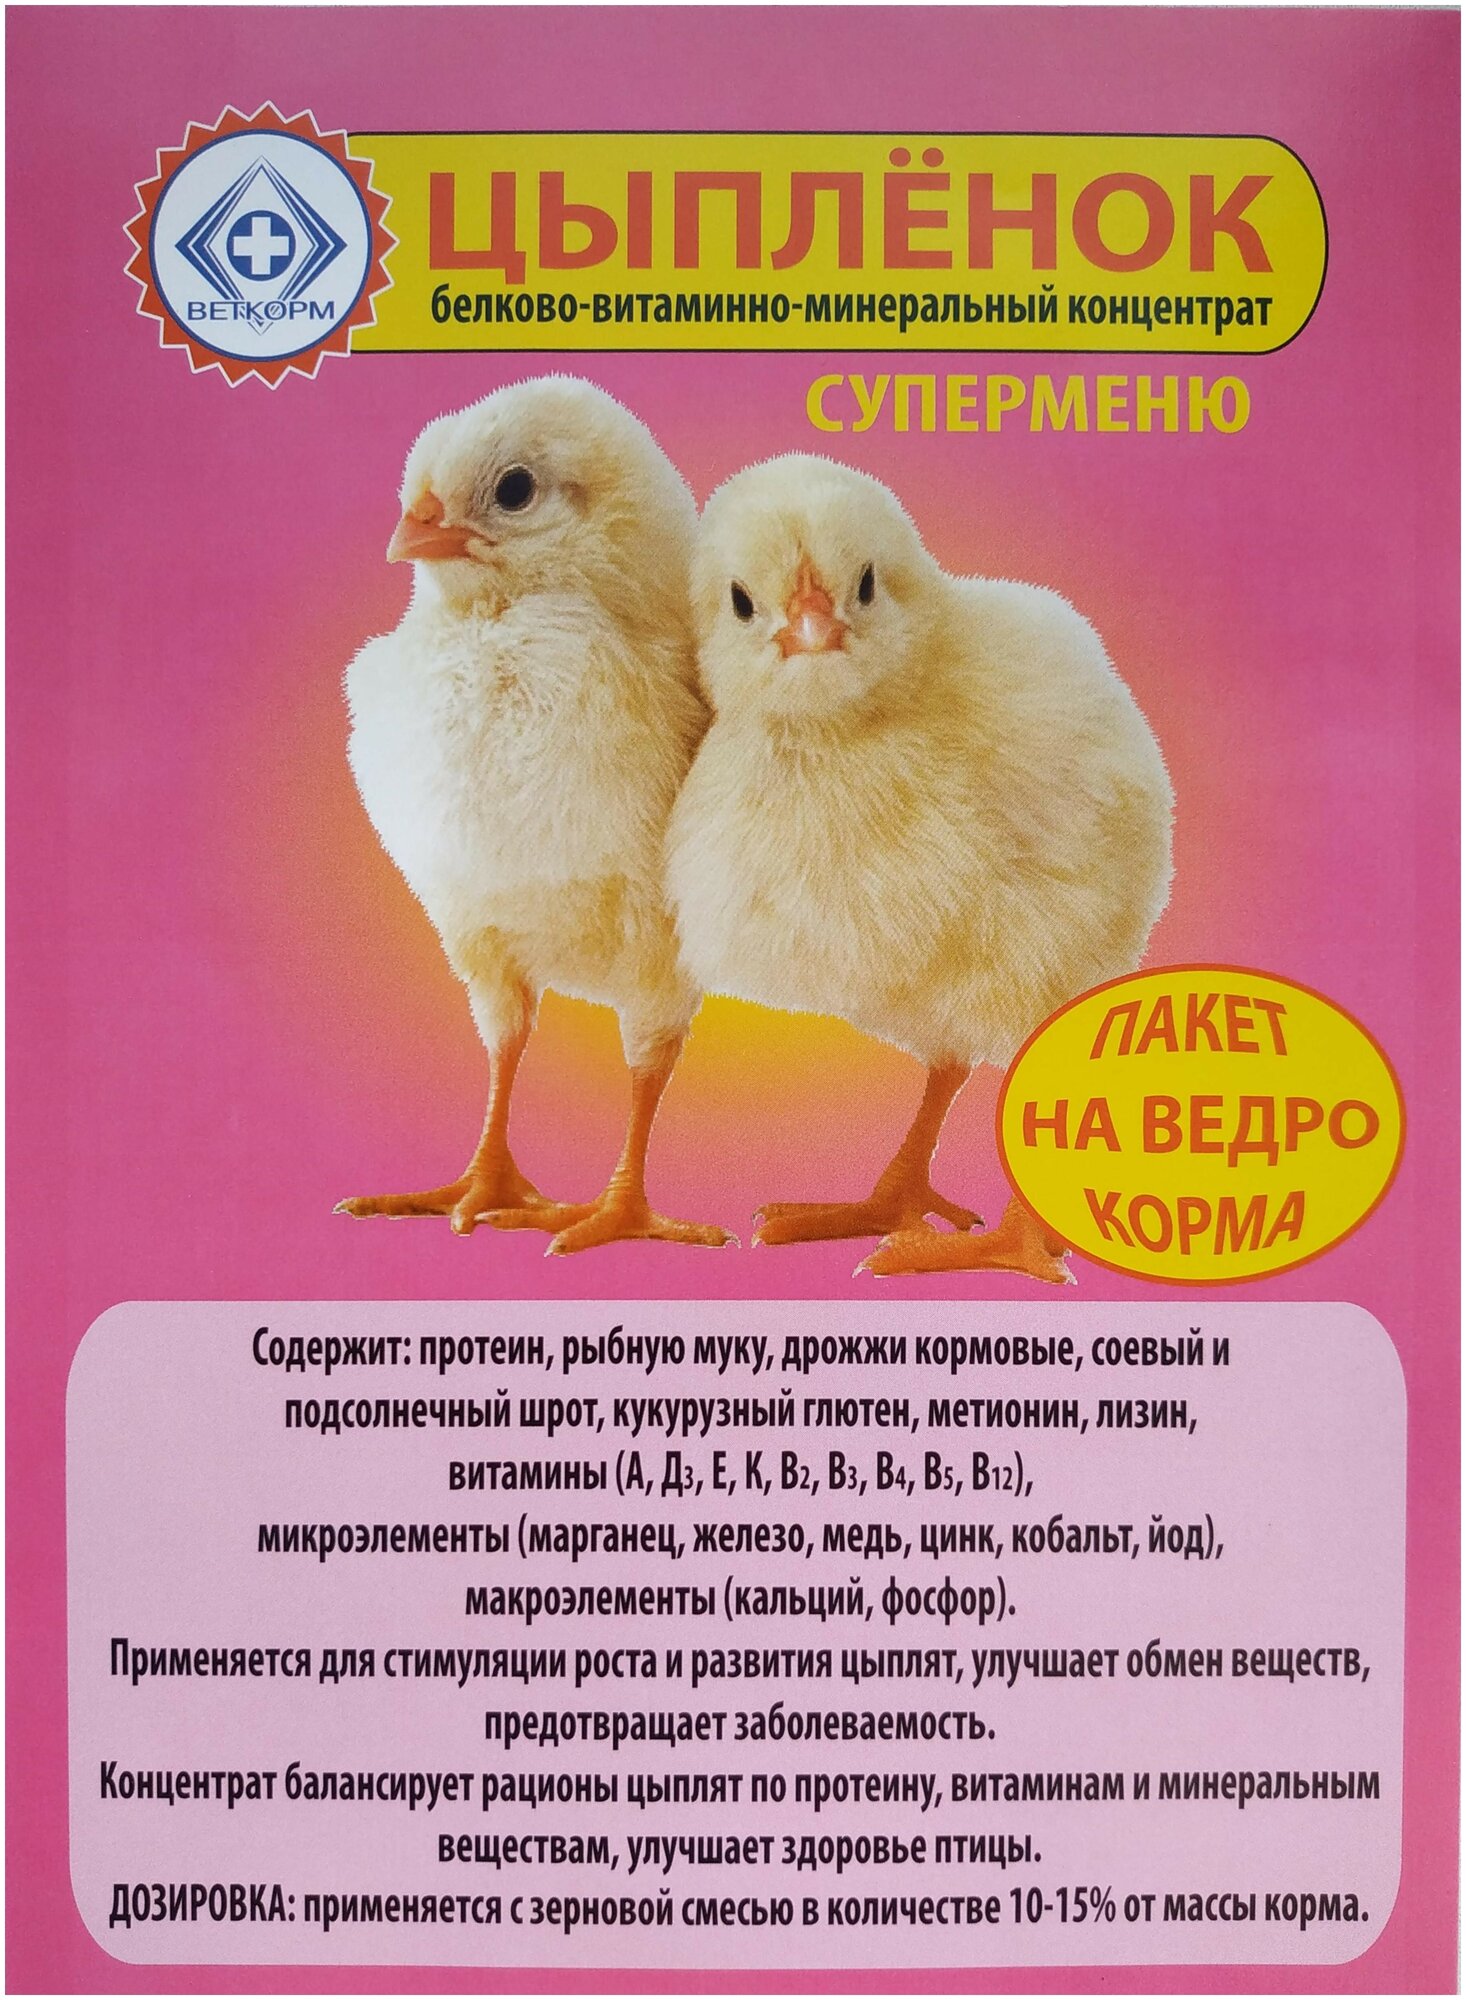 Белково-витаминно-минеральный концентрат (бвмк) Цыпленок Суперменю, кормовая добавка для цыплят,900г